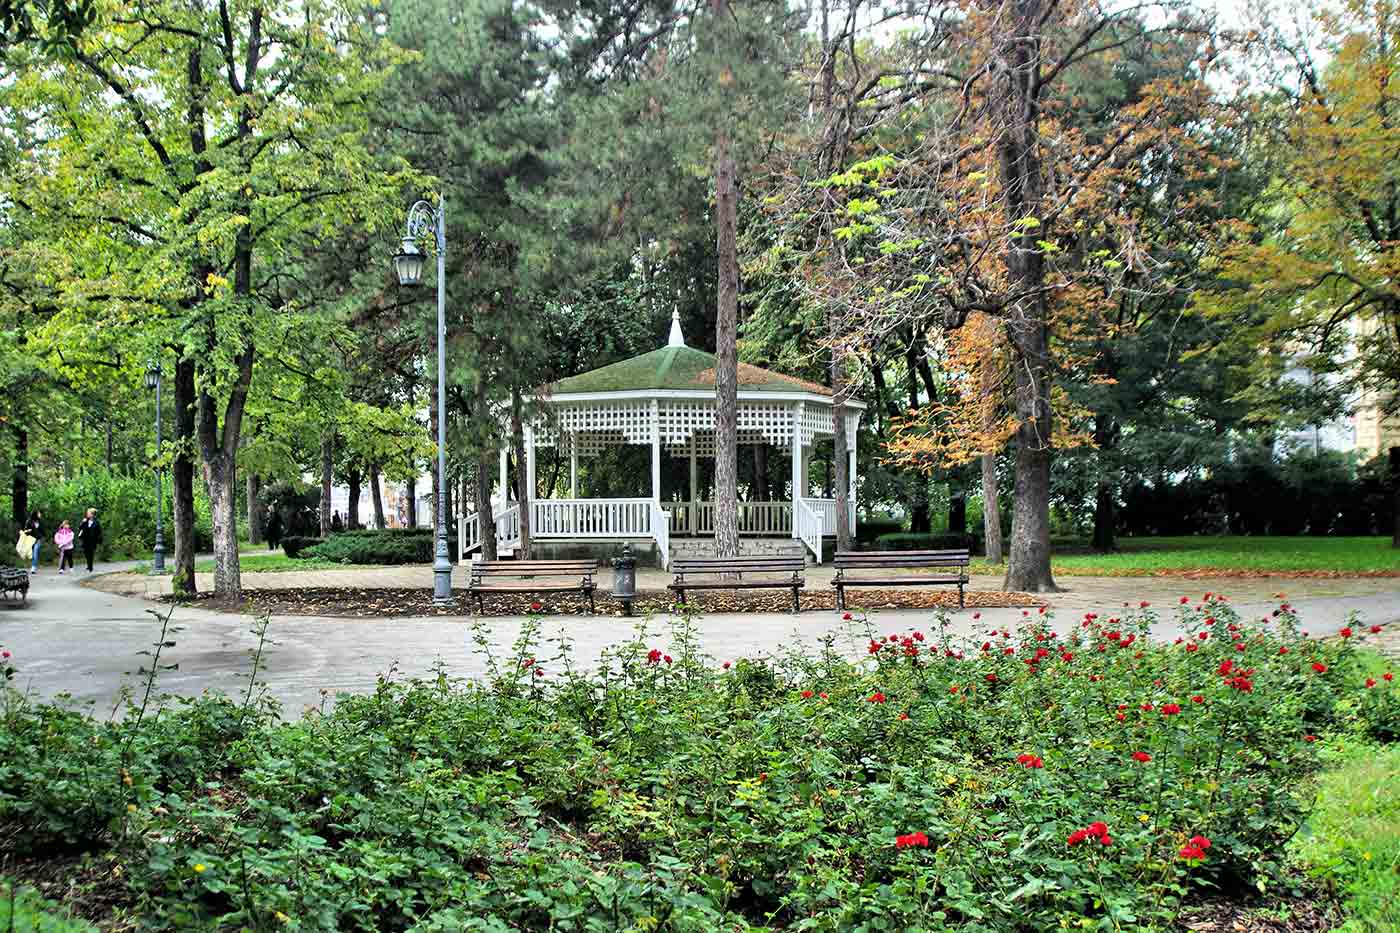 Danube Park